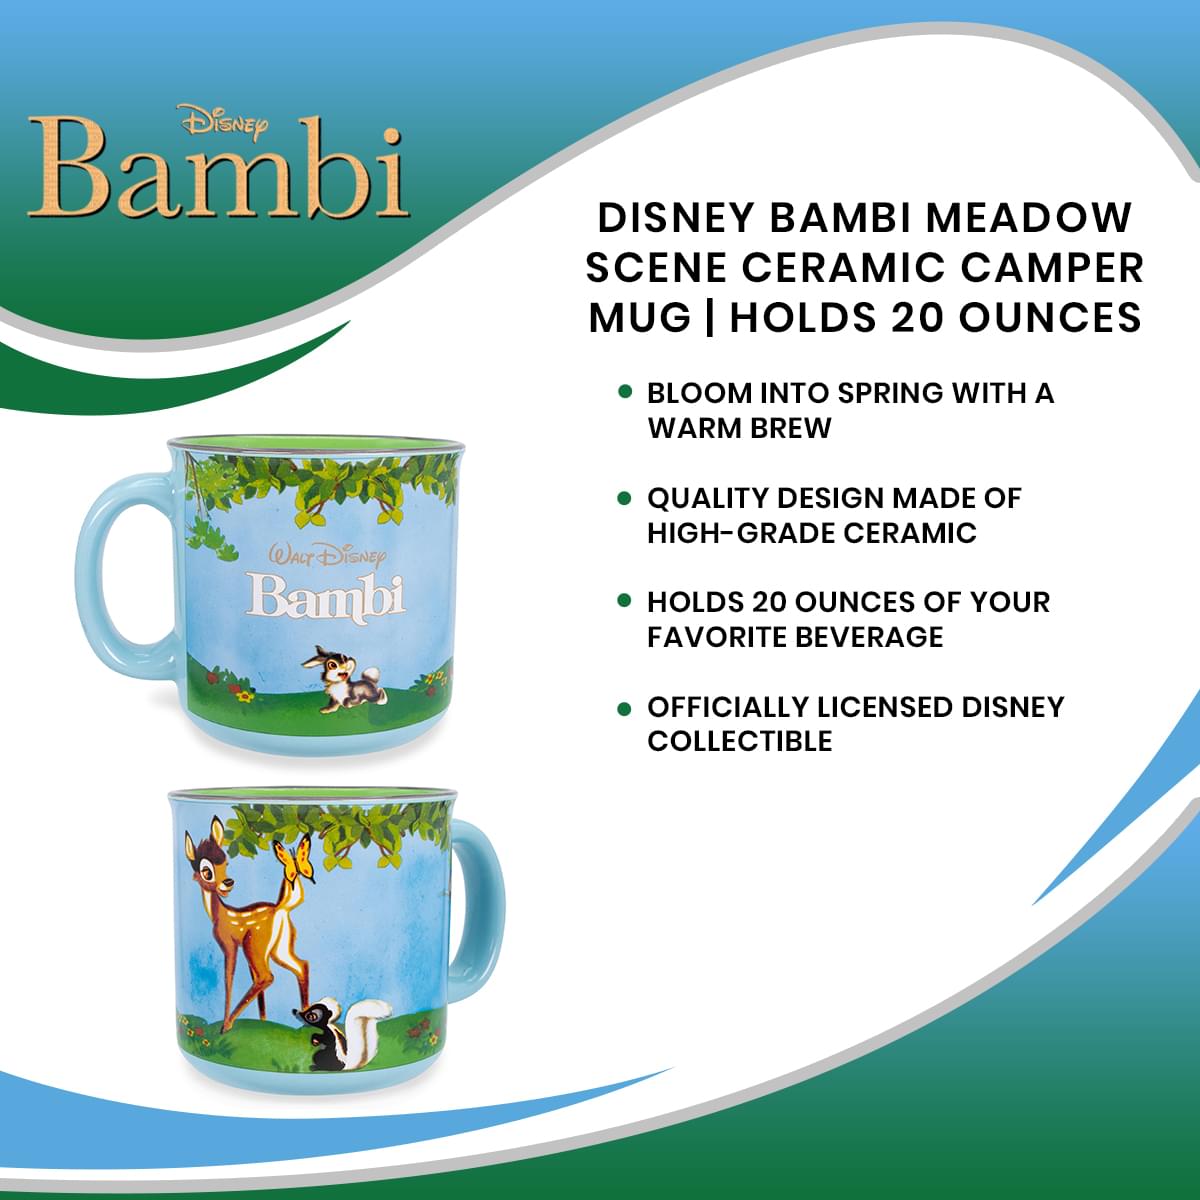 Disney Bambi Meadow Scene Ceramic Camper Mug | Holds 20 Ounces